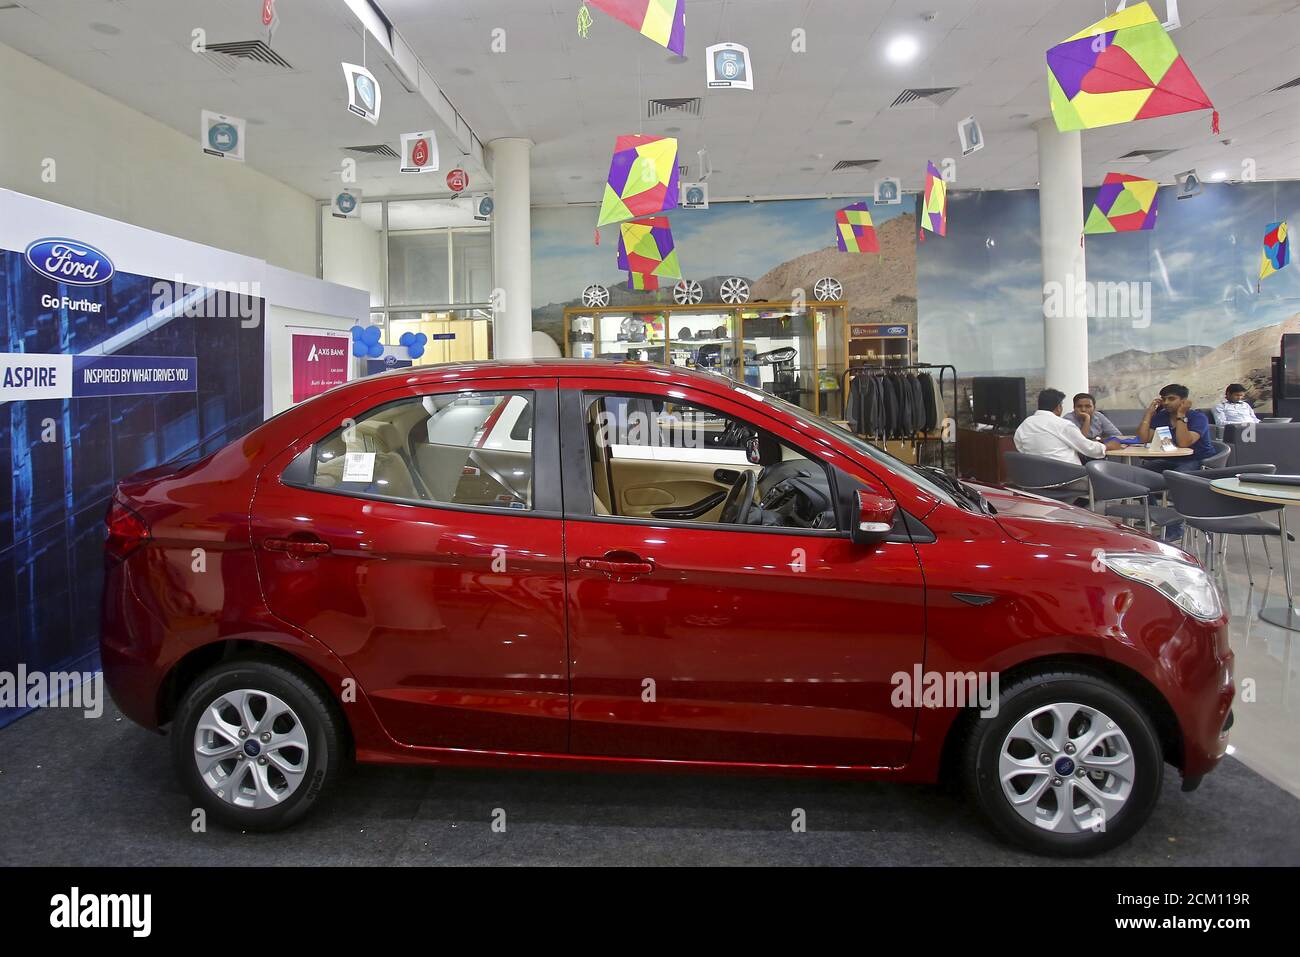 Les clients s'assoient près de la nouvelle voiture Figo Aspire de Ford  exposée dans une salle d'exposition à New Delhi, en Inde, le 11 août 2015.  Ford Motor Co prévoit d'utiliser les